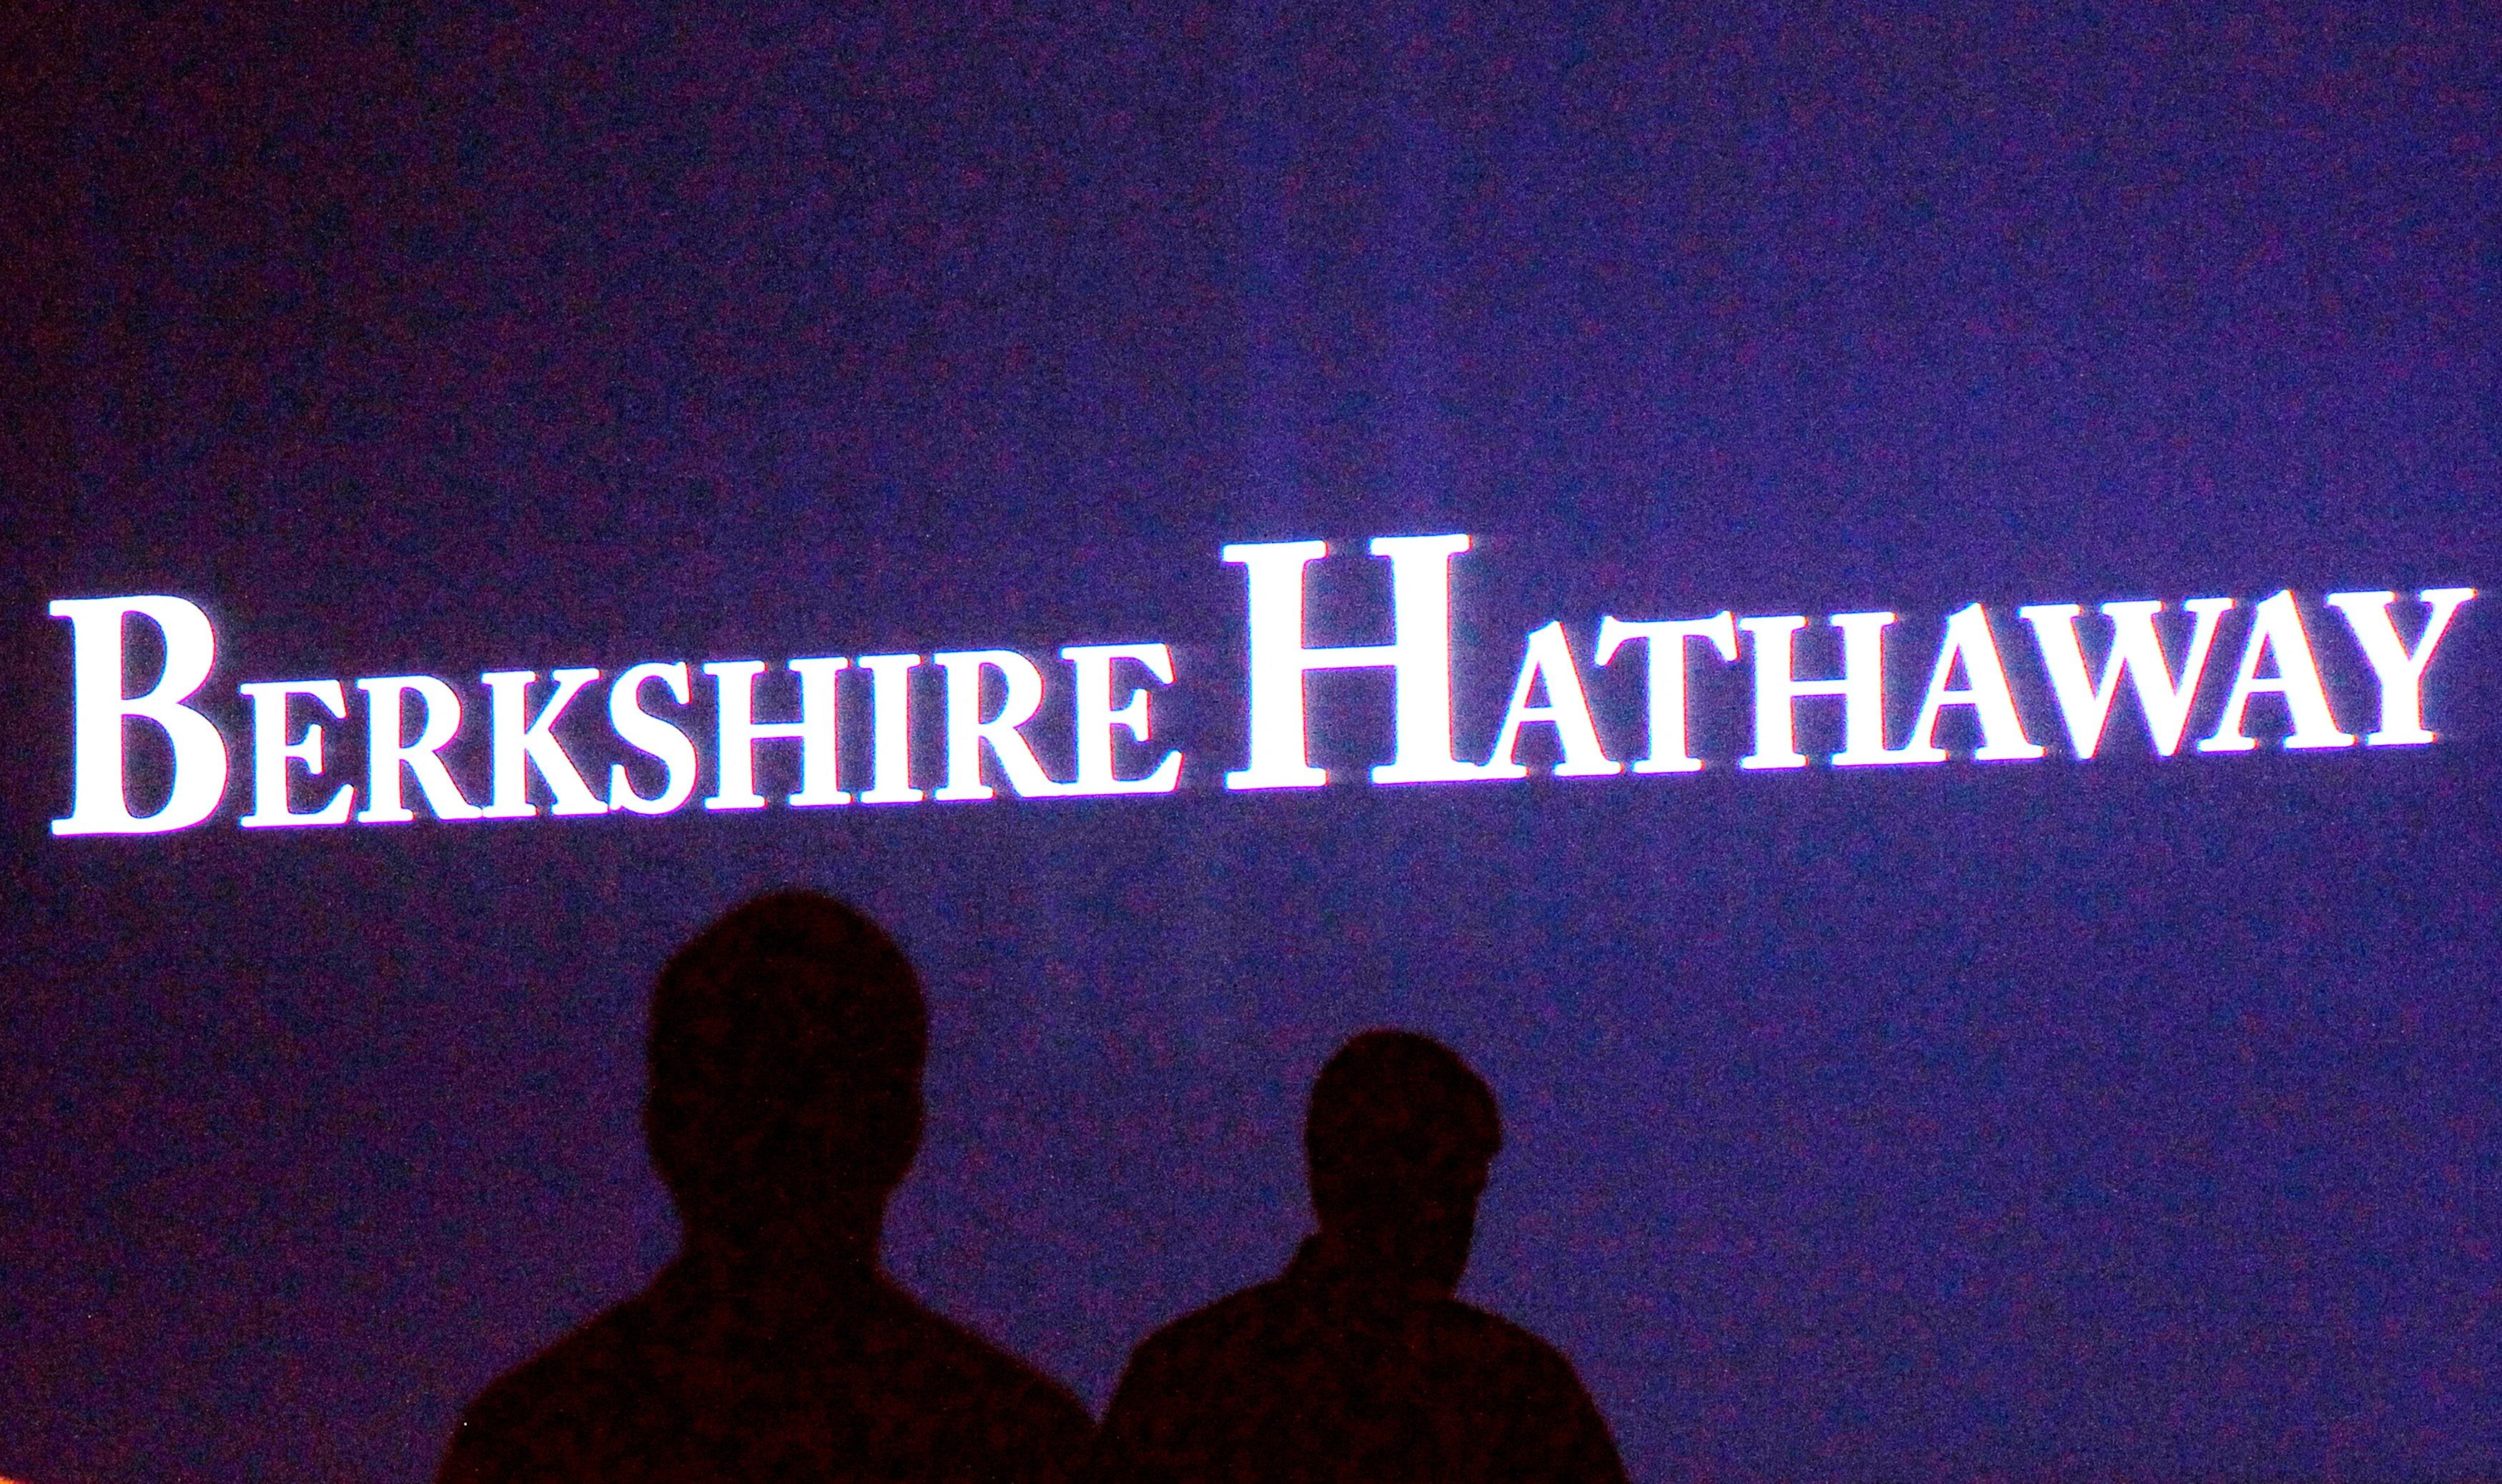 El dueño de Berkshire Hathaway tiene una fortuna de 106.000 millones de dólares y lo convierte en la quinta persona más rica del mundo.